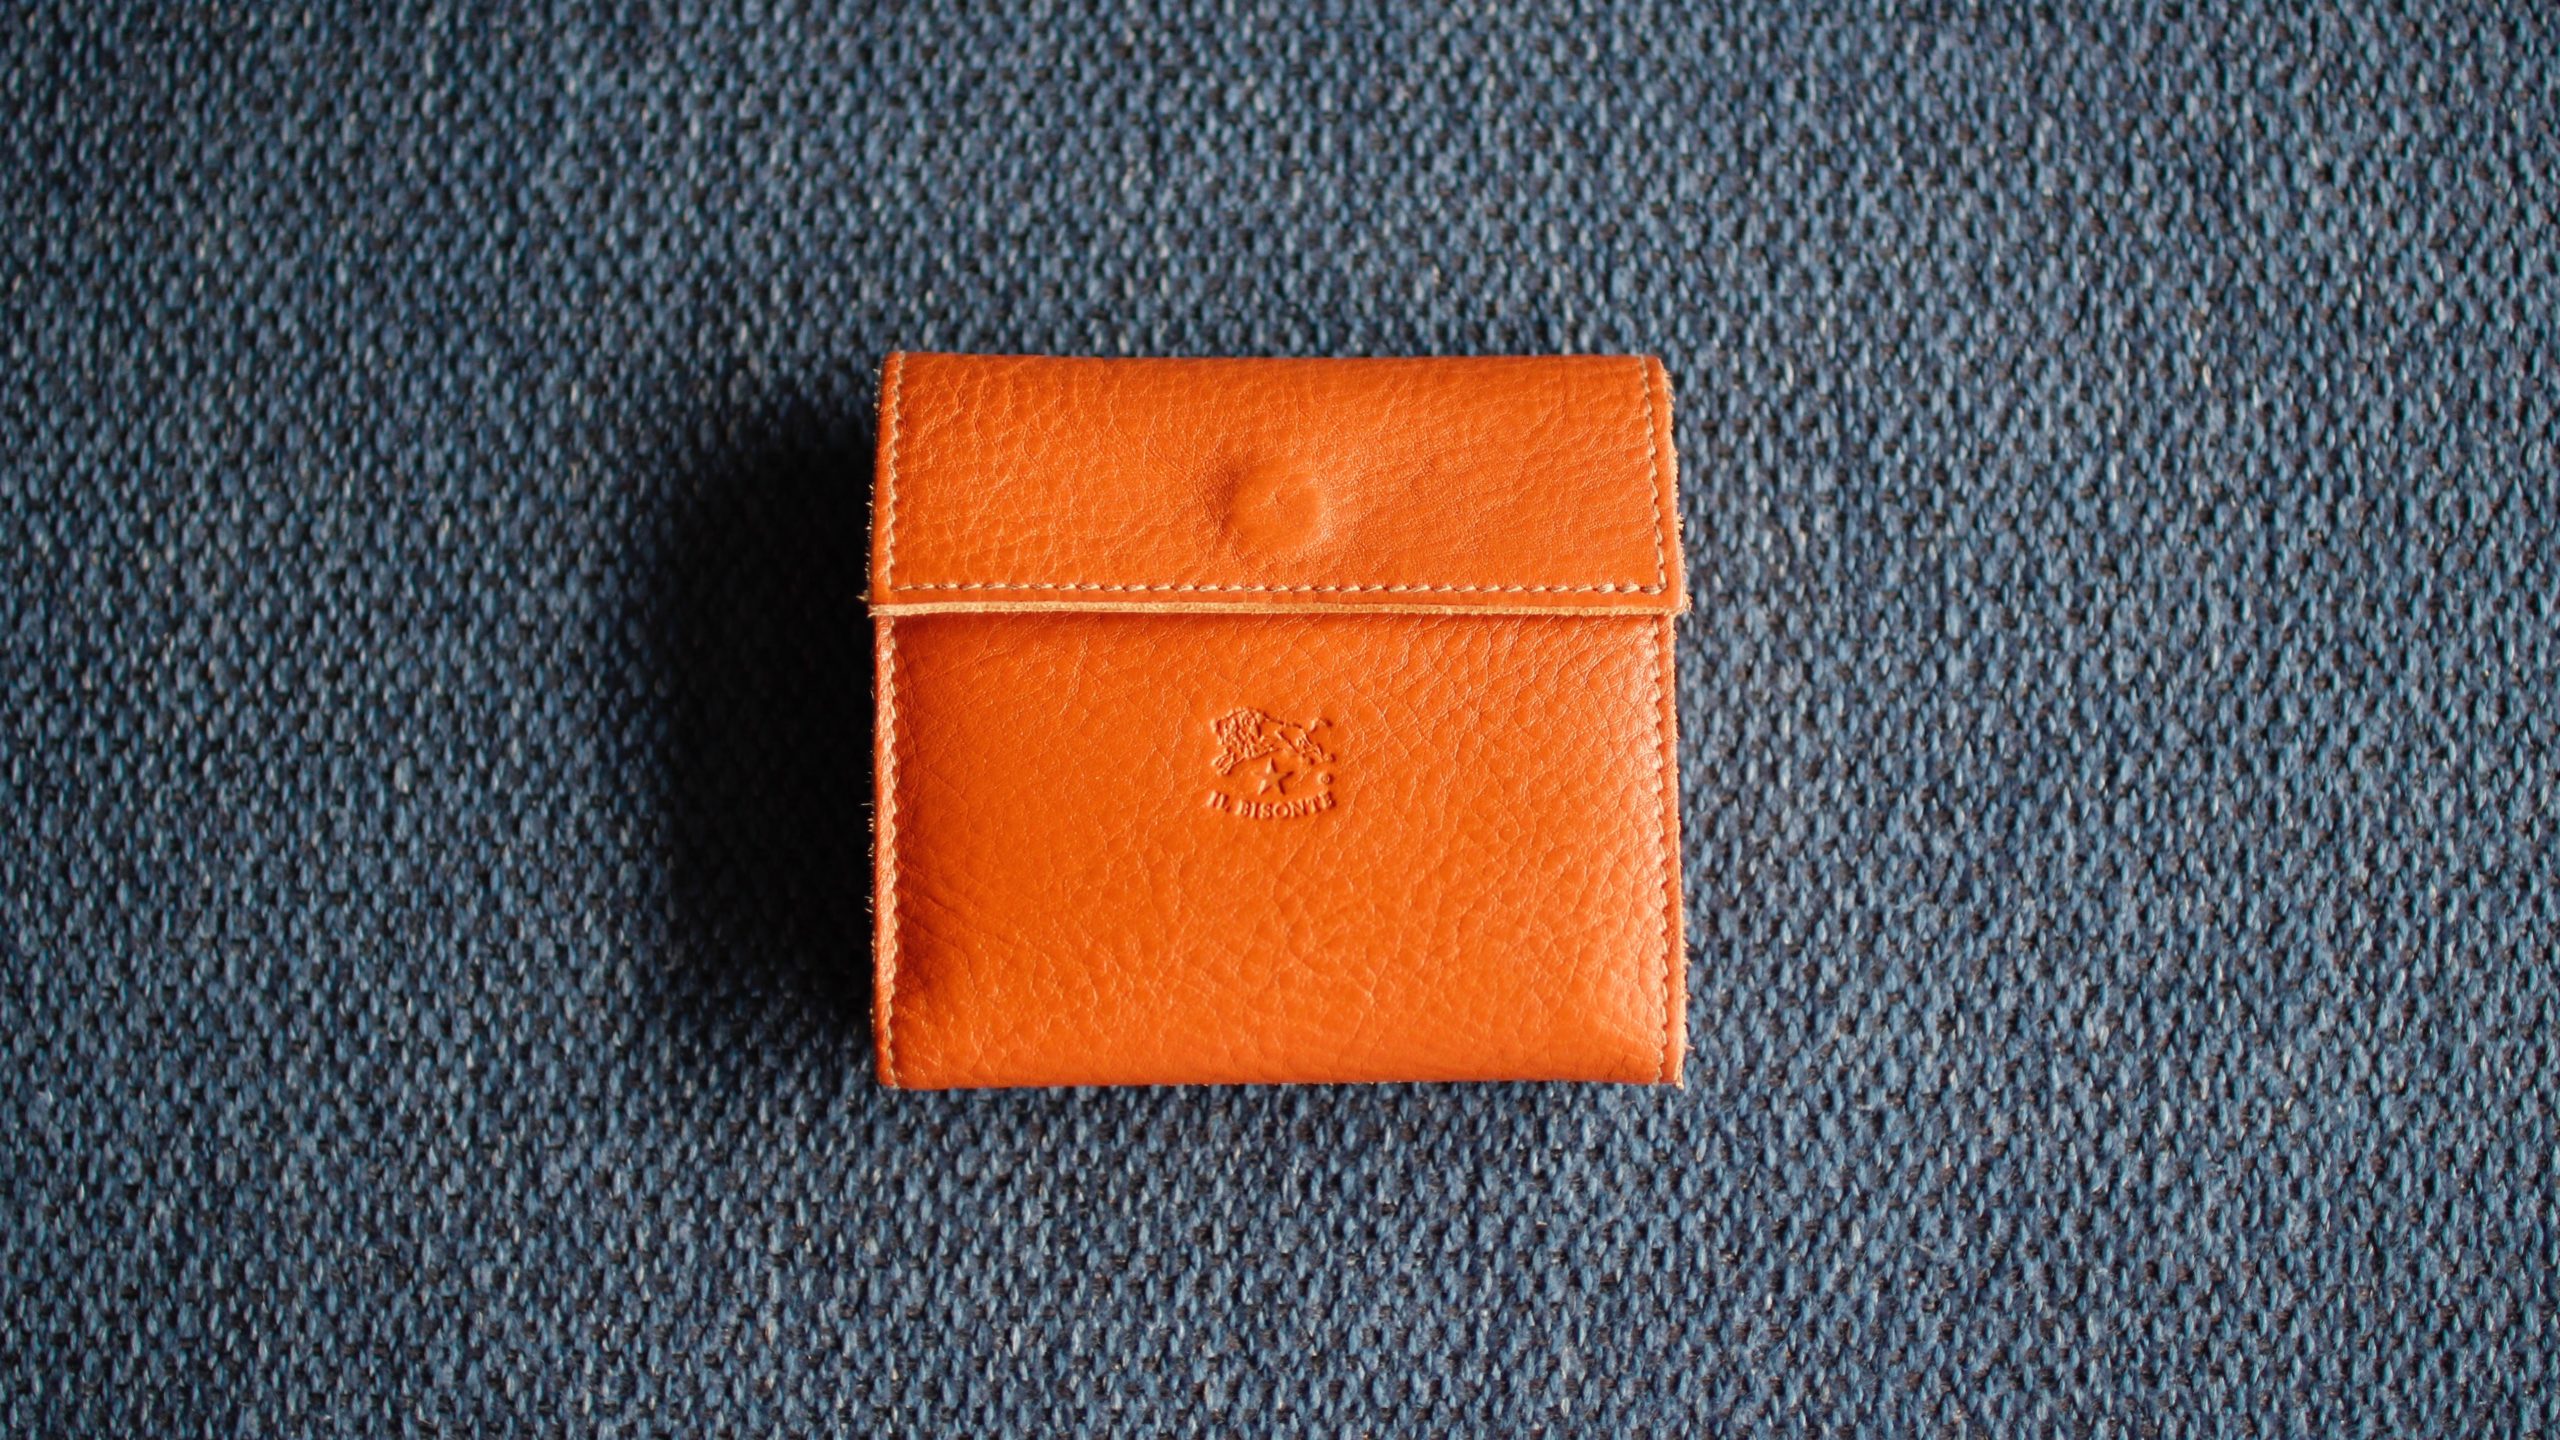 「イルビゾンテのコンパクト財布「411465」6ヶ月使用レビュー」のアイキャッチ画像